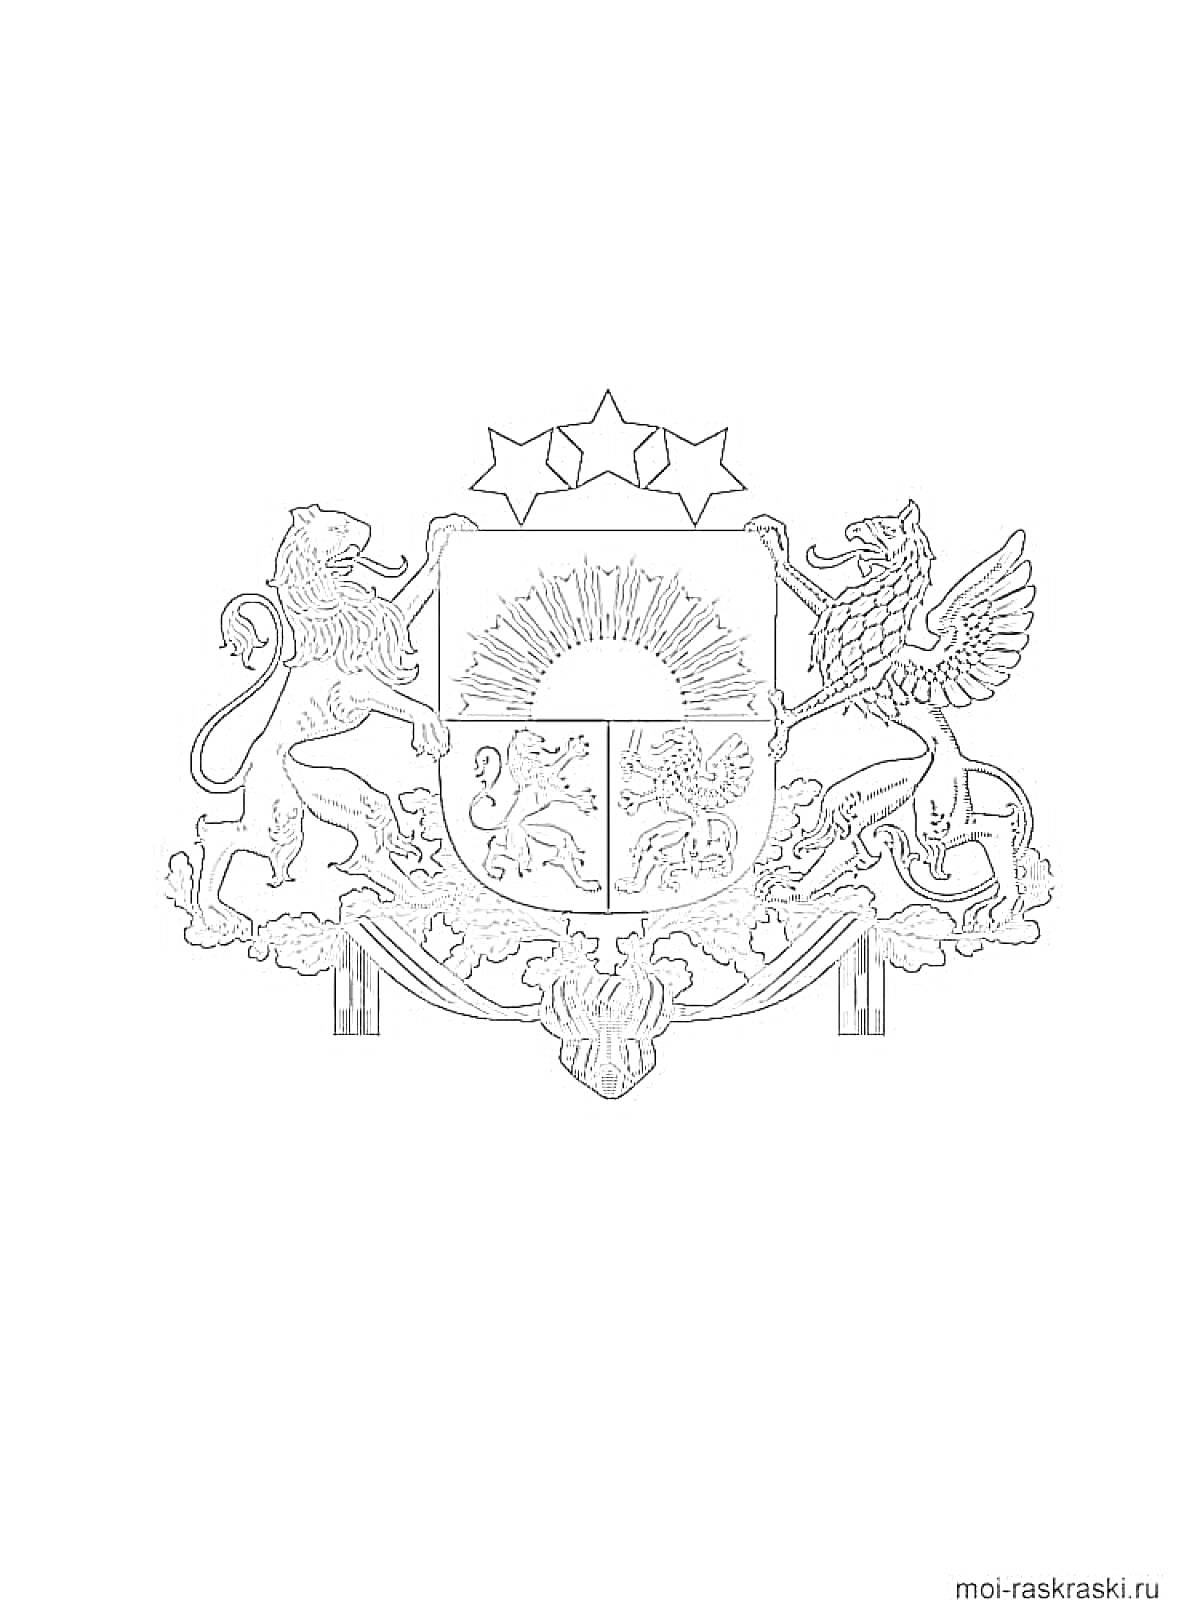 Раскраска Герб с солнцем, львом, грифоном, тремя звездами и щитом с изображением оленя, льва и рыбы